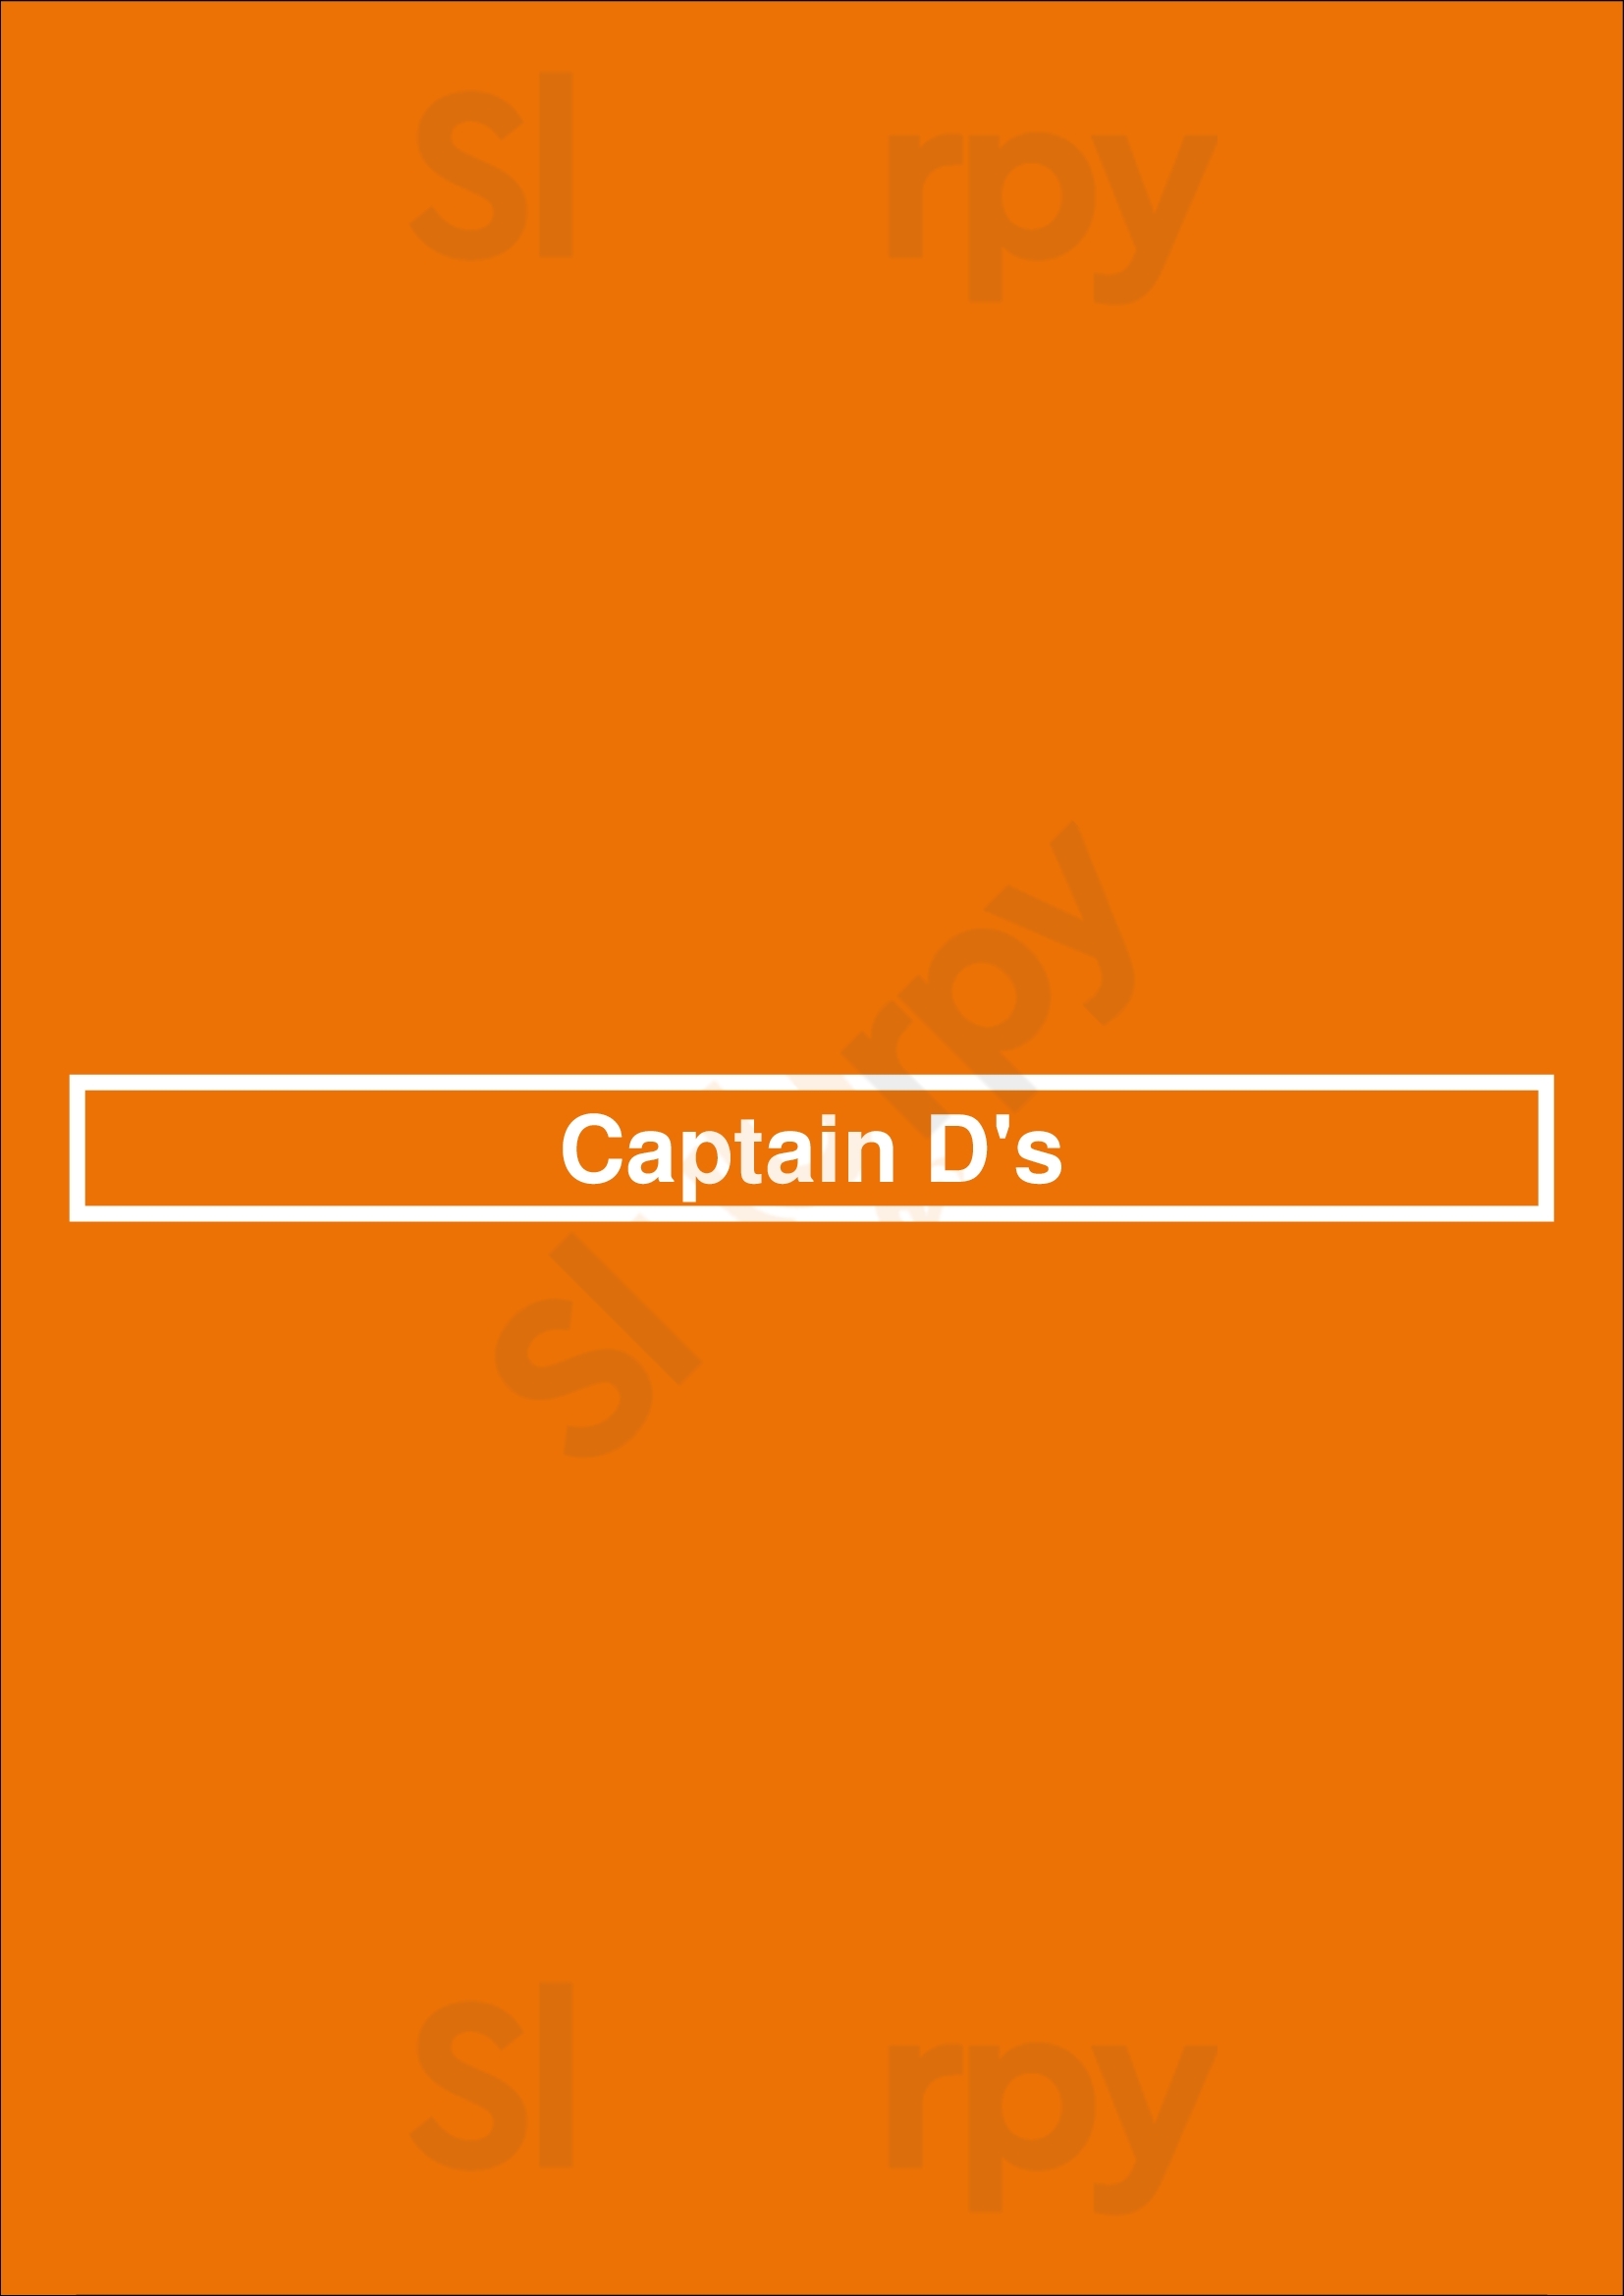 Captain D's Fayetteville Menu - 1